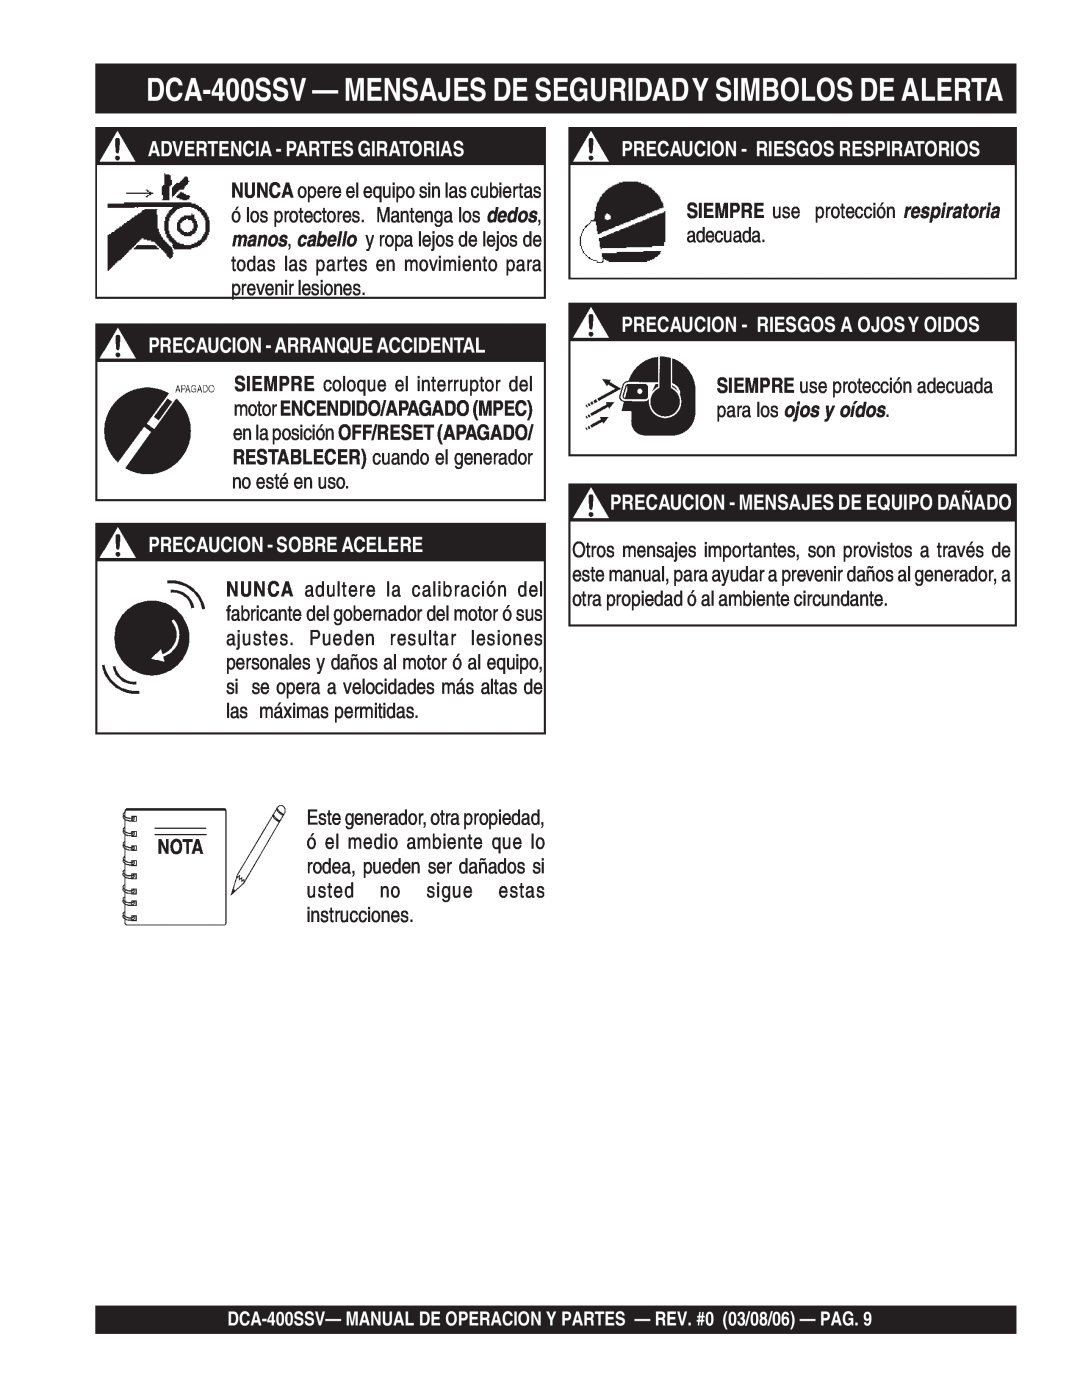 Multiquip DCA-400SSV Advertencia - Partes Giratorias, Precaucion - Sobre Acelere, Precaucion - Riesgos Respiratorios 